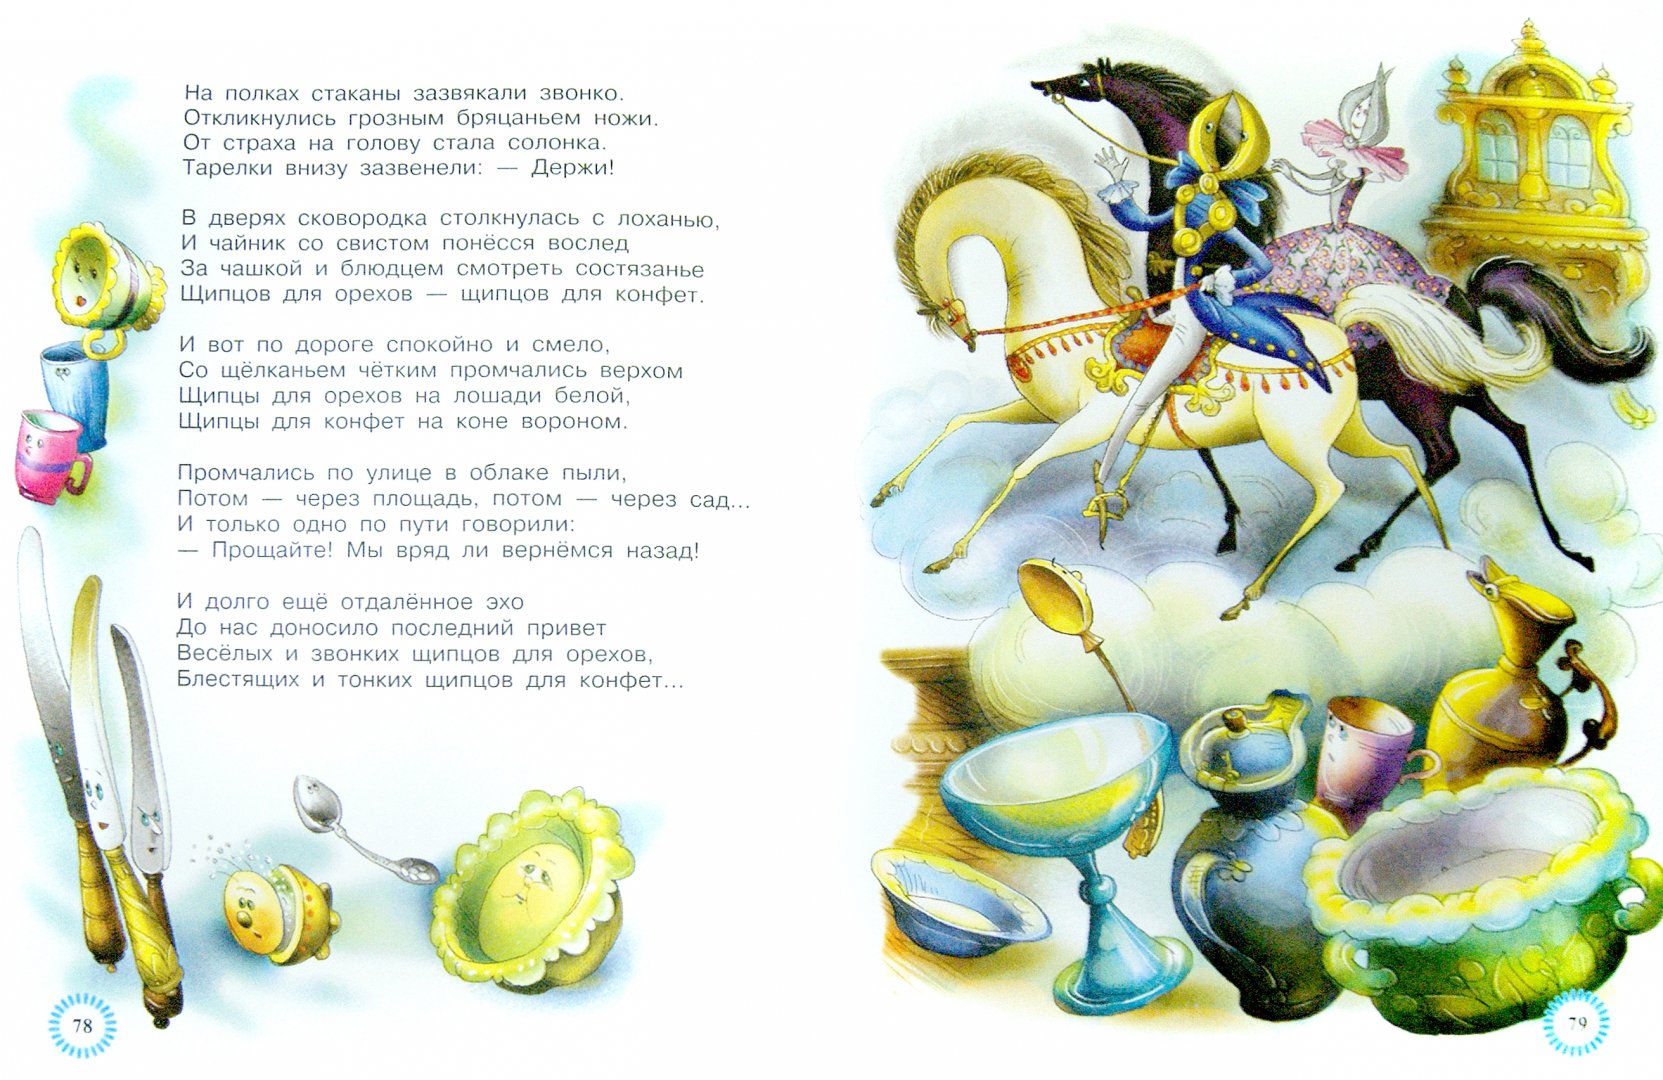 Иллюстрация 1 из 37 для Веселые стихи и песенки - Маршак, Маршак | Лабиринт - книги. Источник: Лабиринт